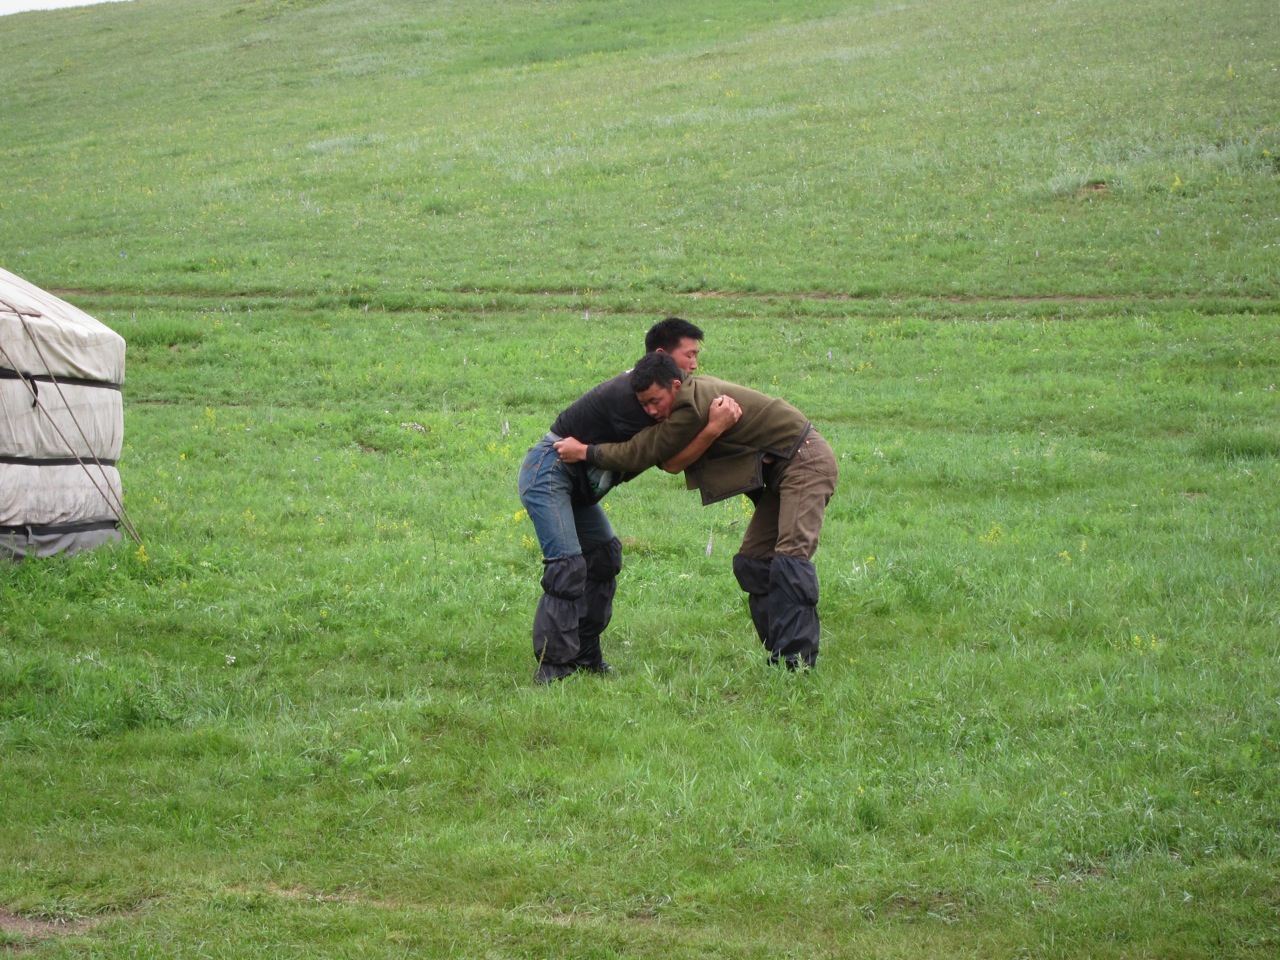 Mongolian wrestling, Gorkhi-terelj NP